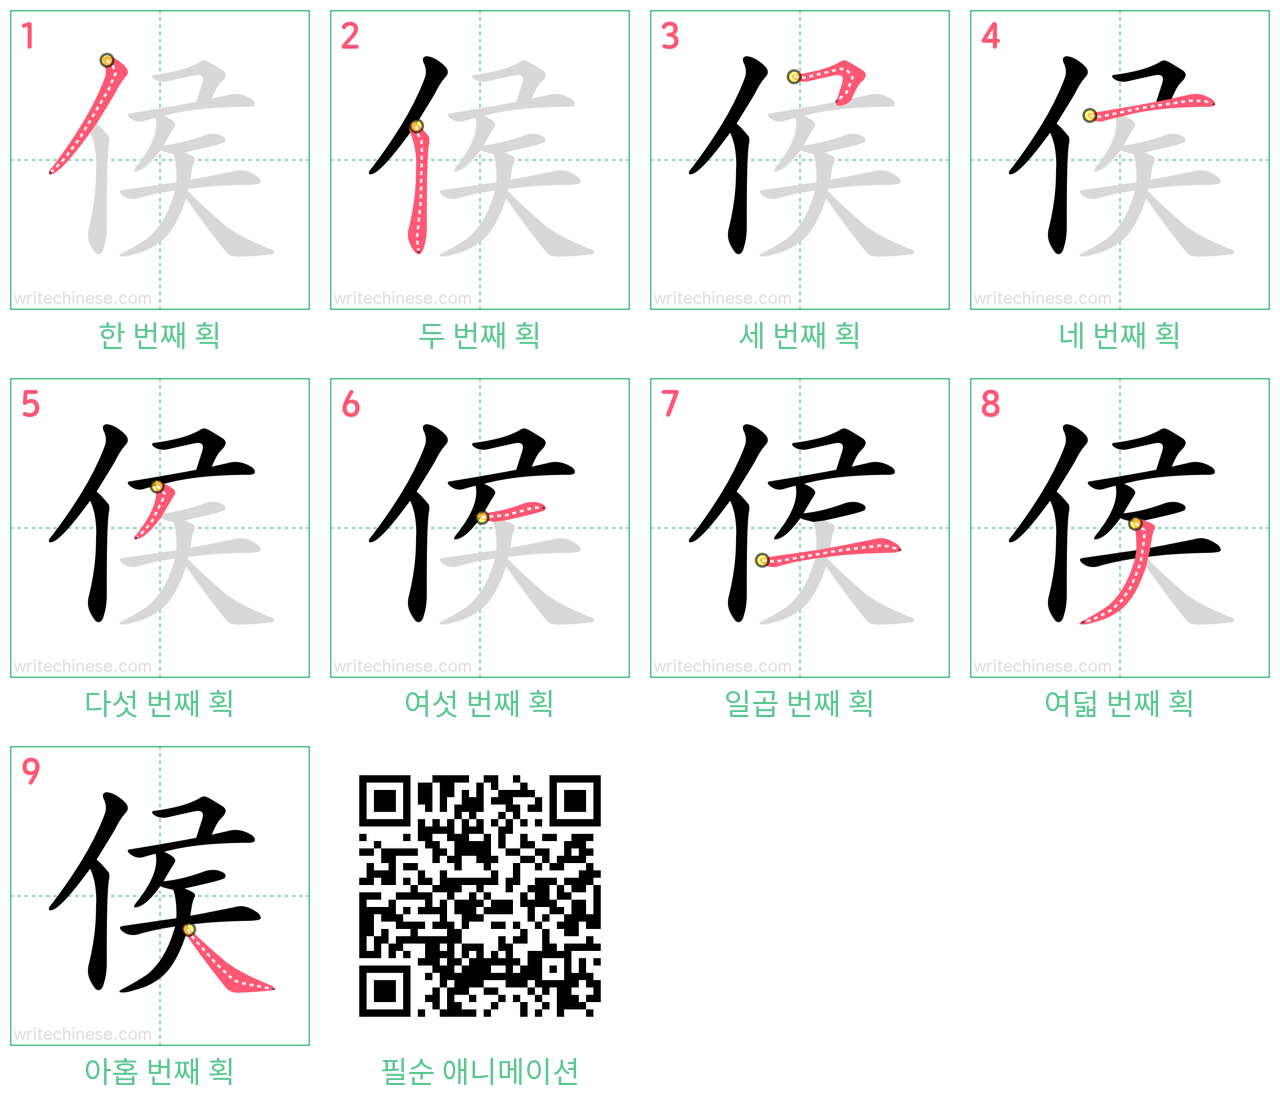 侯 step-by-step stroke order diagrams